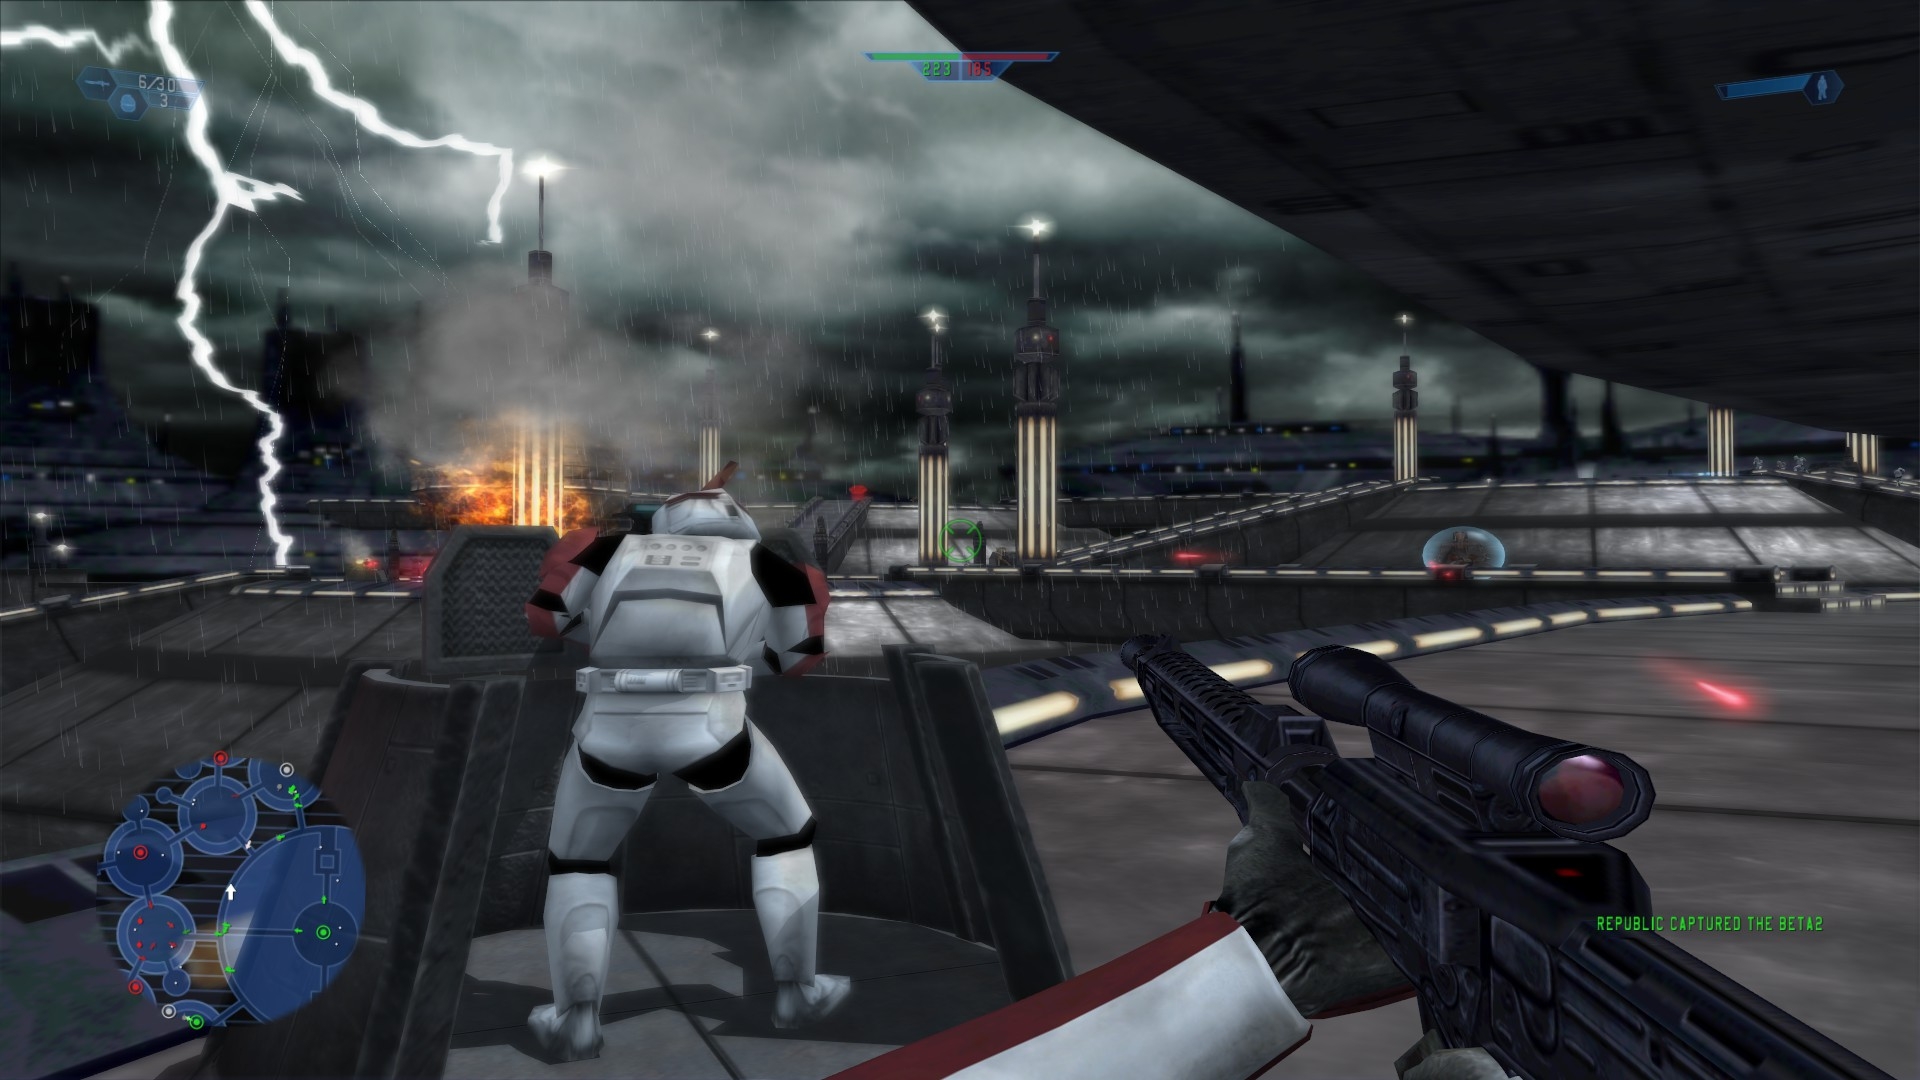 Игры войны один. Star Wars Battlefront (Classic, 2004). Звездные войны батлфронт игра 2004. Star Wars Battlefront 1 2005. Star Wars: Battlefront 2 (Classic, 2005).